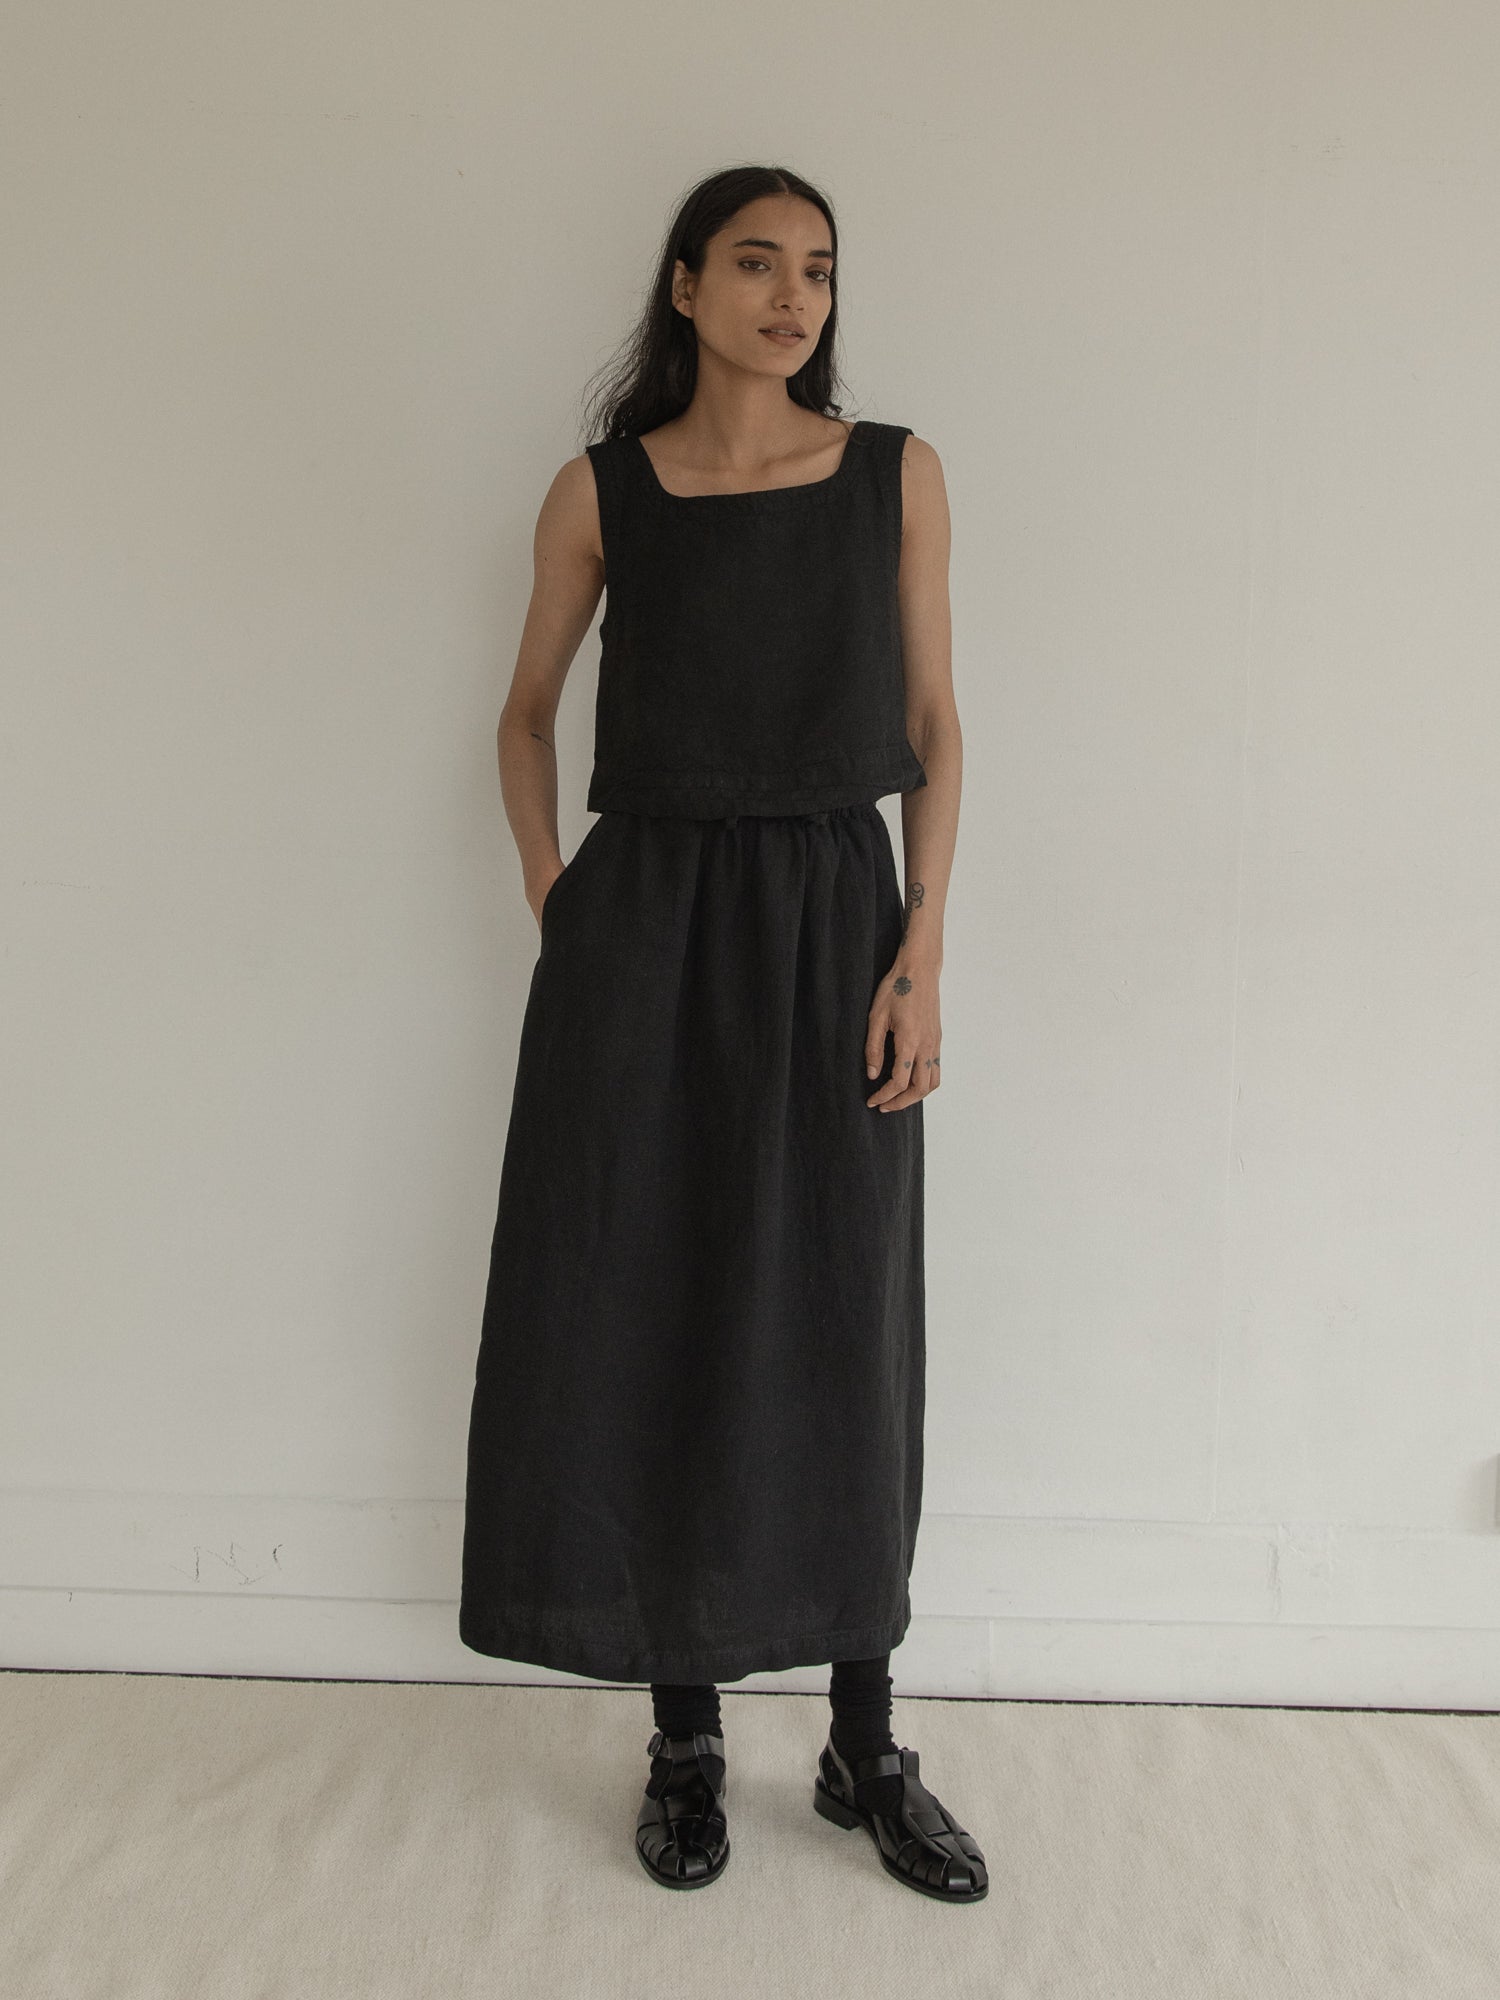 Adrie Skirt in Noir